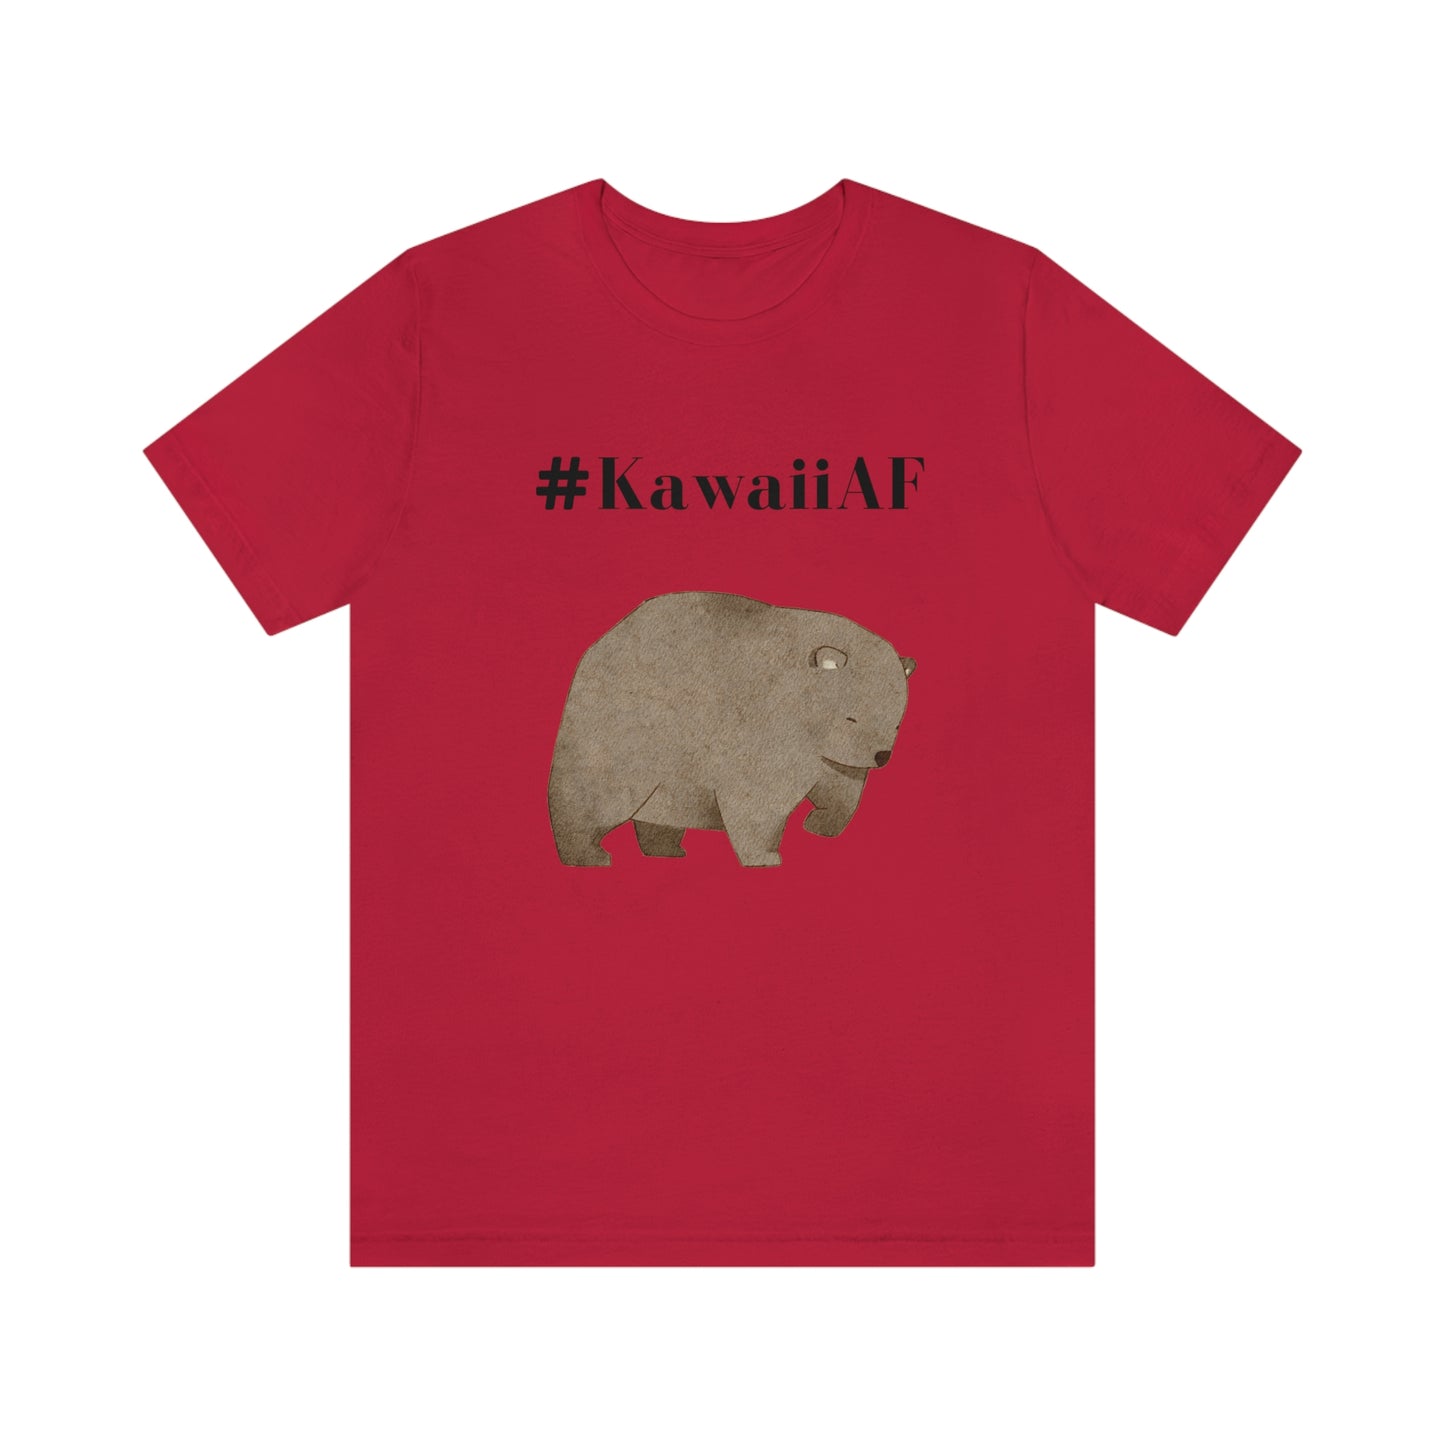 #KawaiiAF Brown Bear - Unisex Jersey Short Sleeve Tee